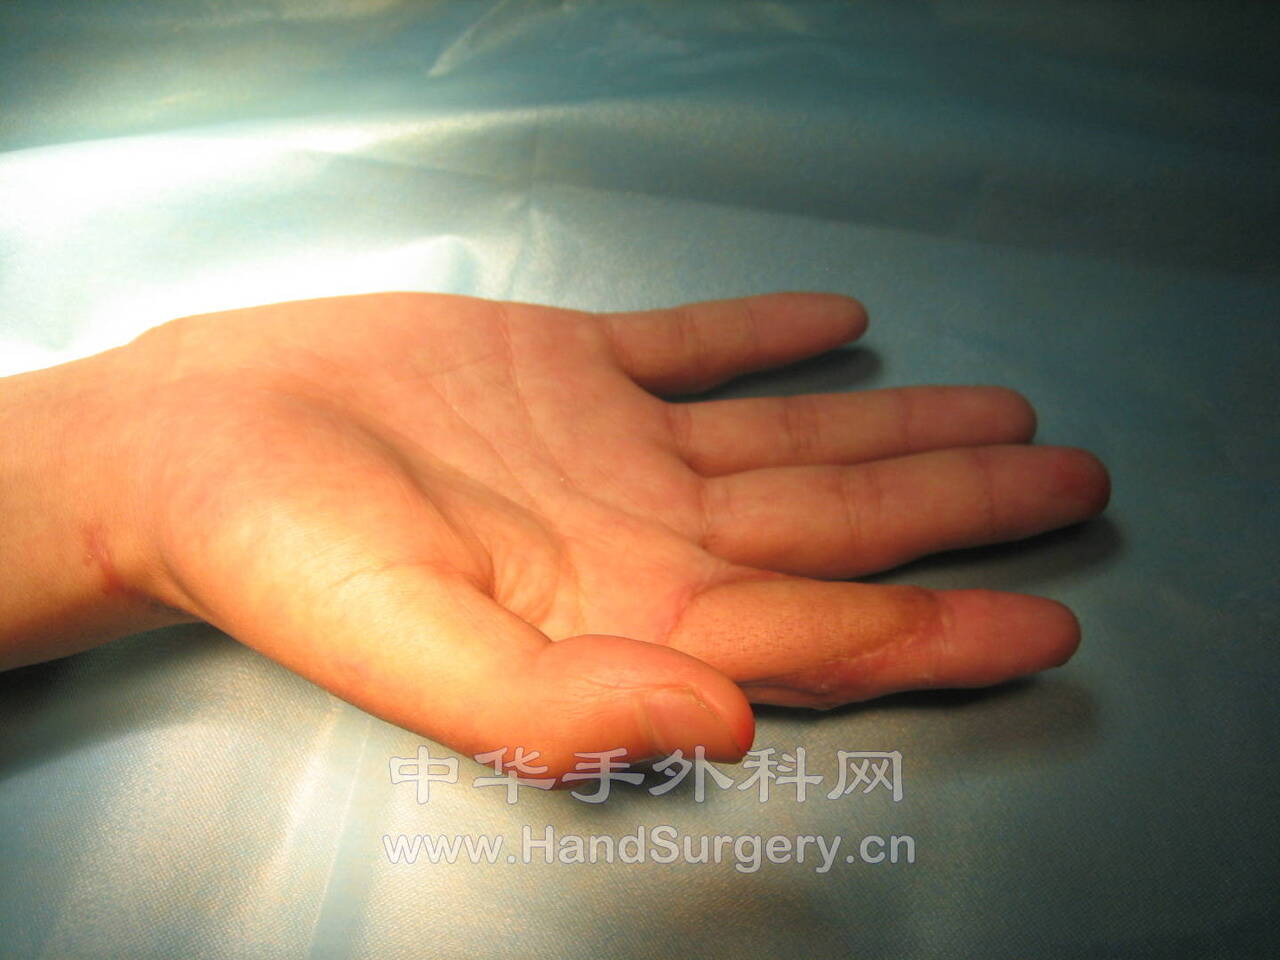 第一掌背动脉皮瓣 - 经典病例 - 中华手外科网